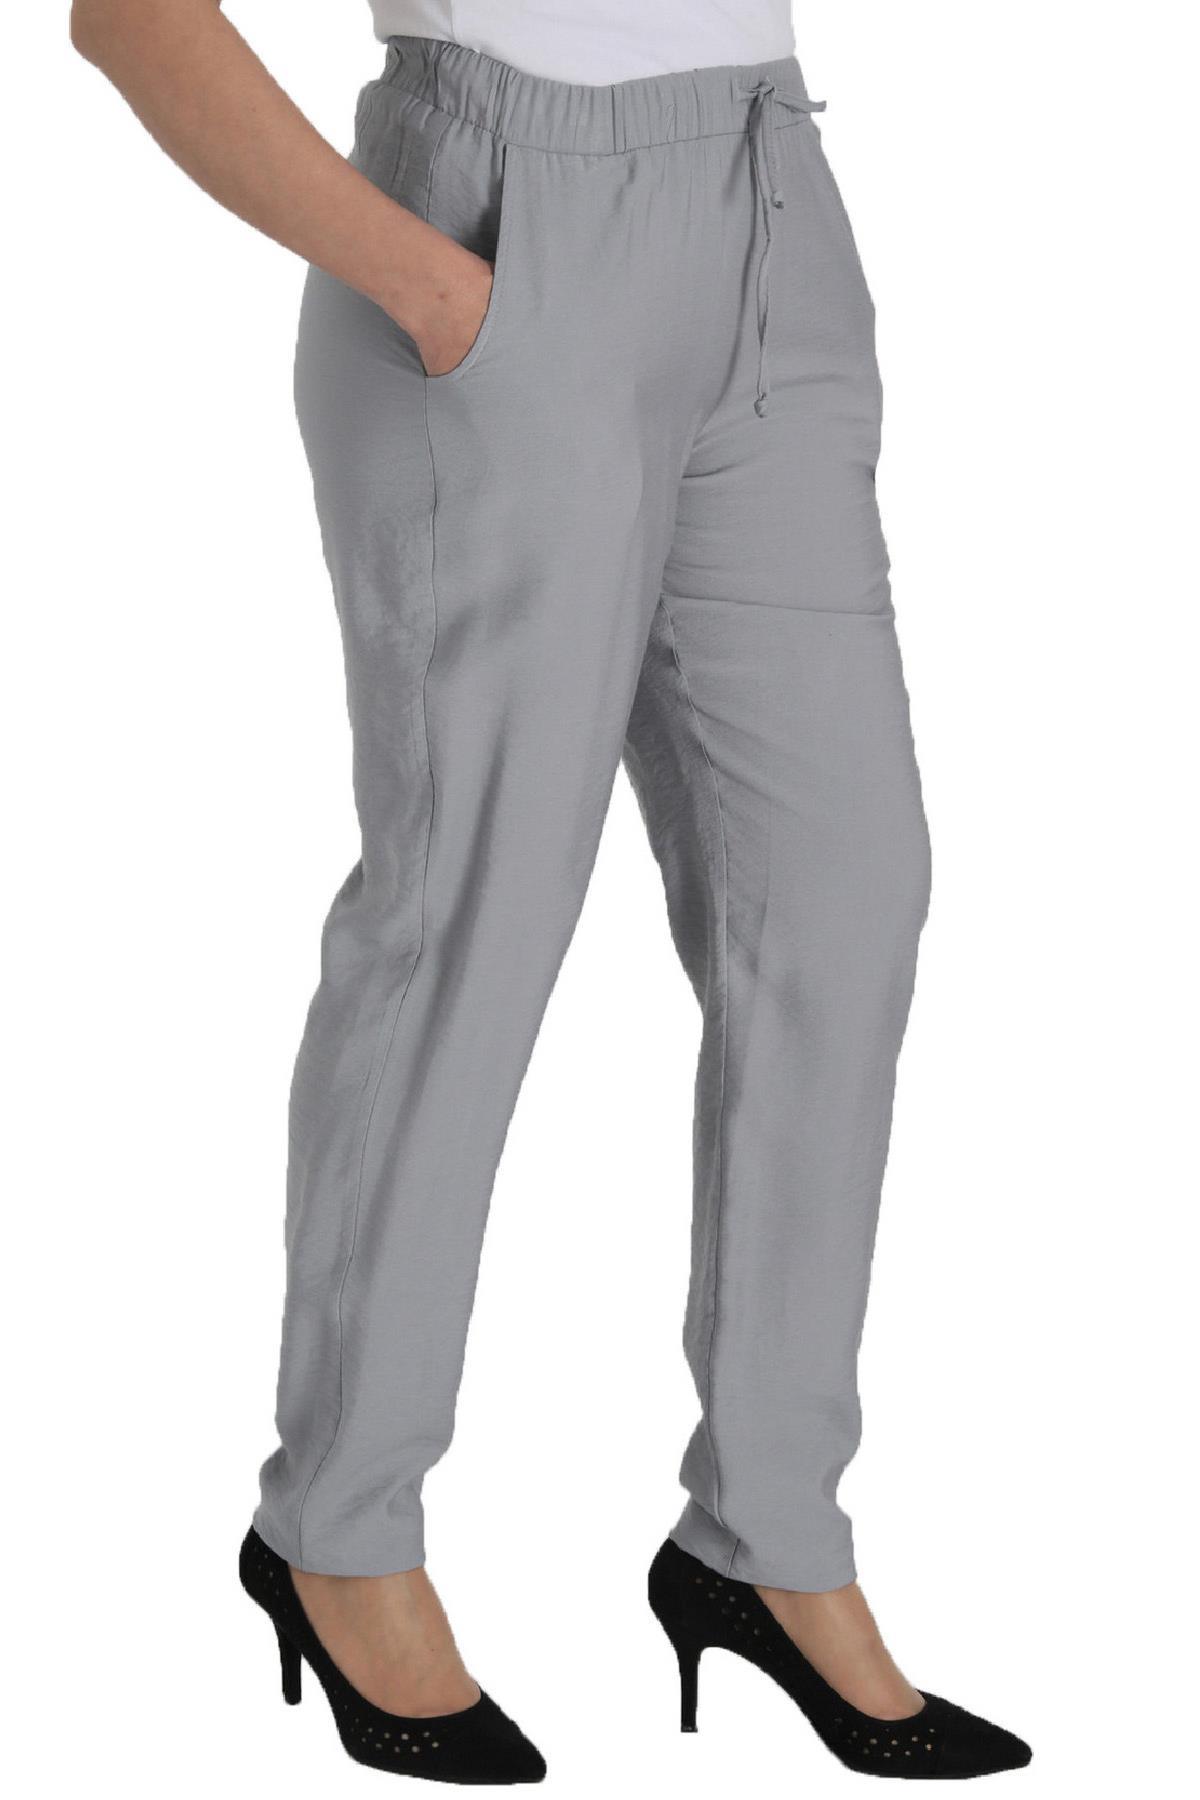 fierte-kadin-buyuk-beden-pantolon-lm62041-keten-normal-elastik-bel-dar-paca-spor-cep-mavi-siyah-yesi-19452.jpg